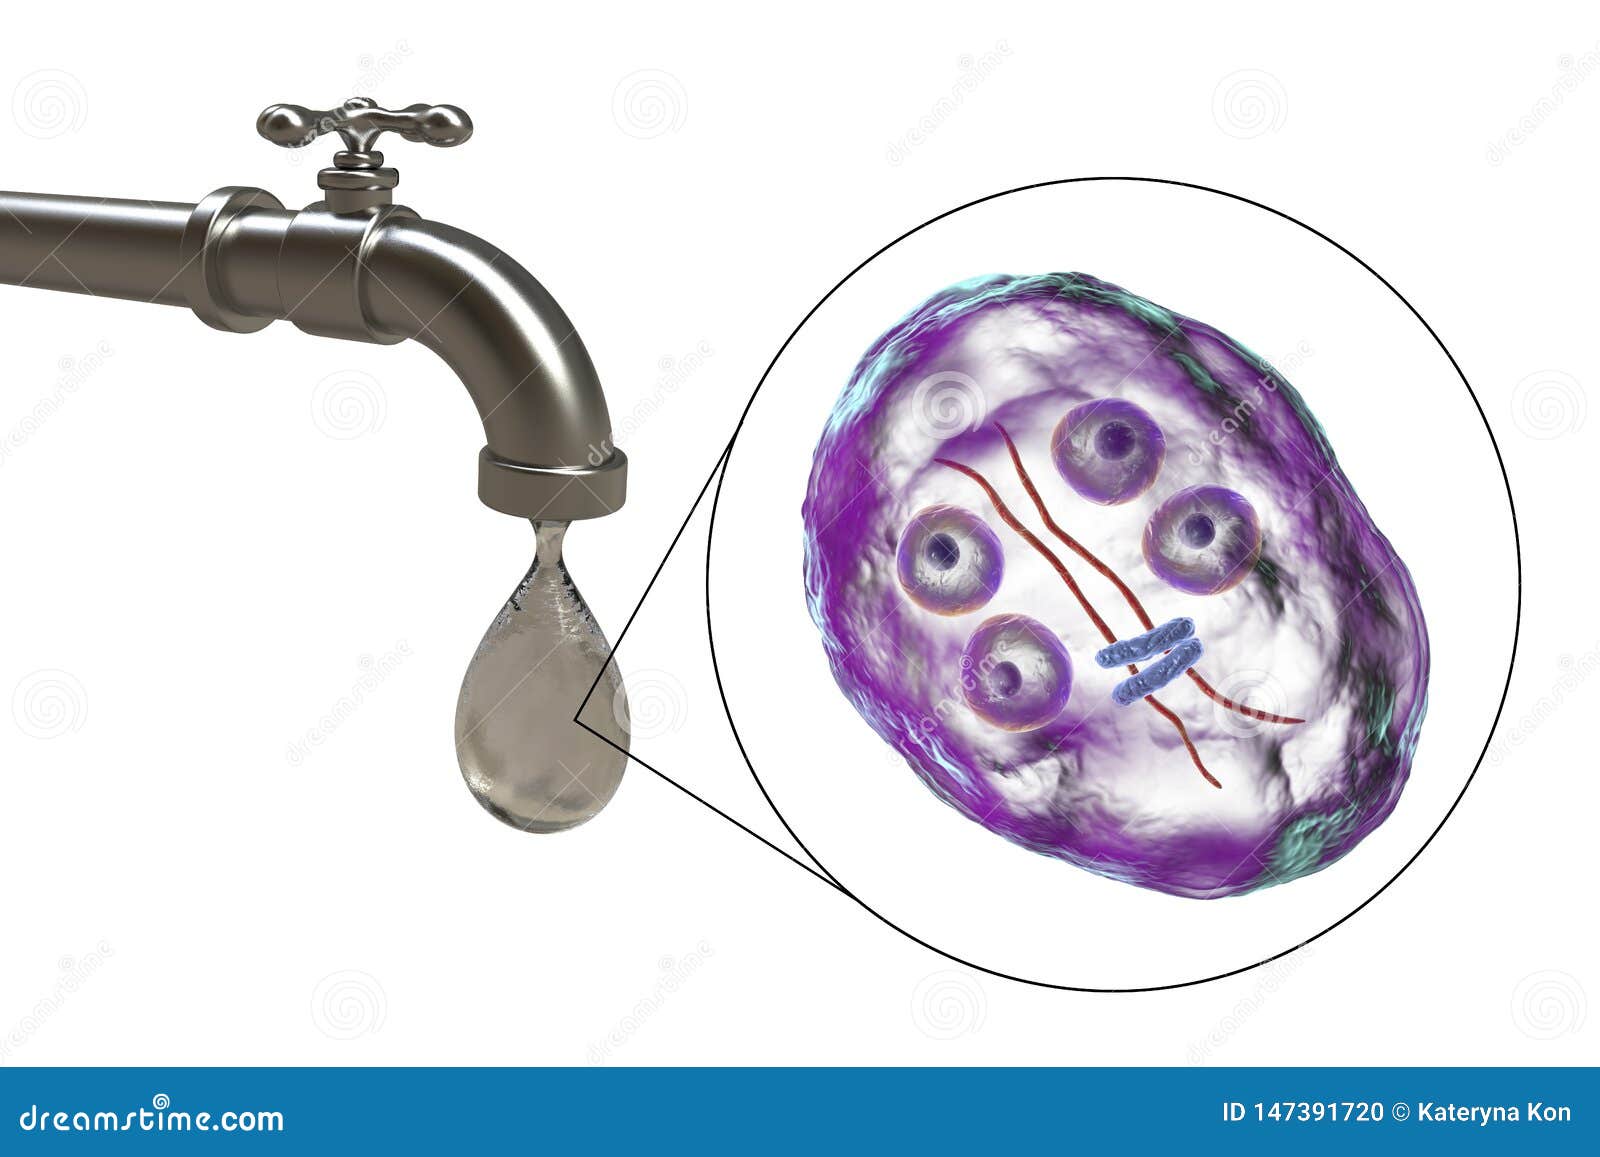 Giardia in drinking water, Cryptosporidiosis and giradiasis in Pawi, northwest Ethiopia